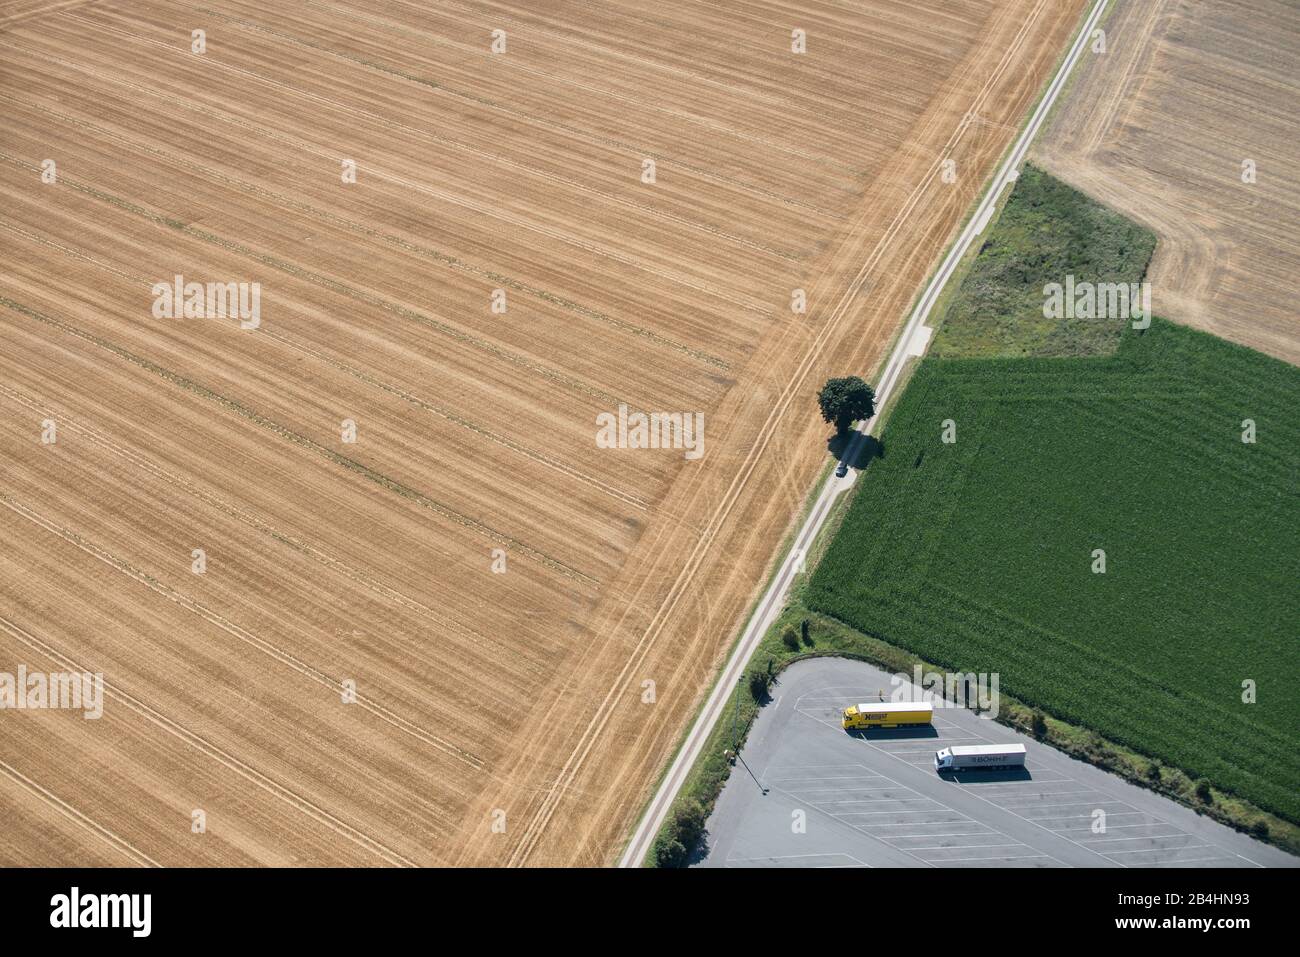 Ludtaufnahme eines LKW-Parkplatzes am rande großer landwirtschaftlicher Felder Stock Photo